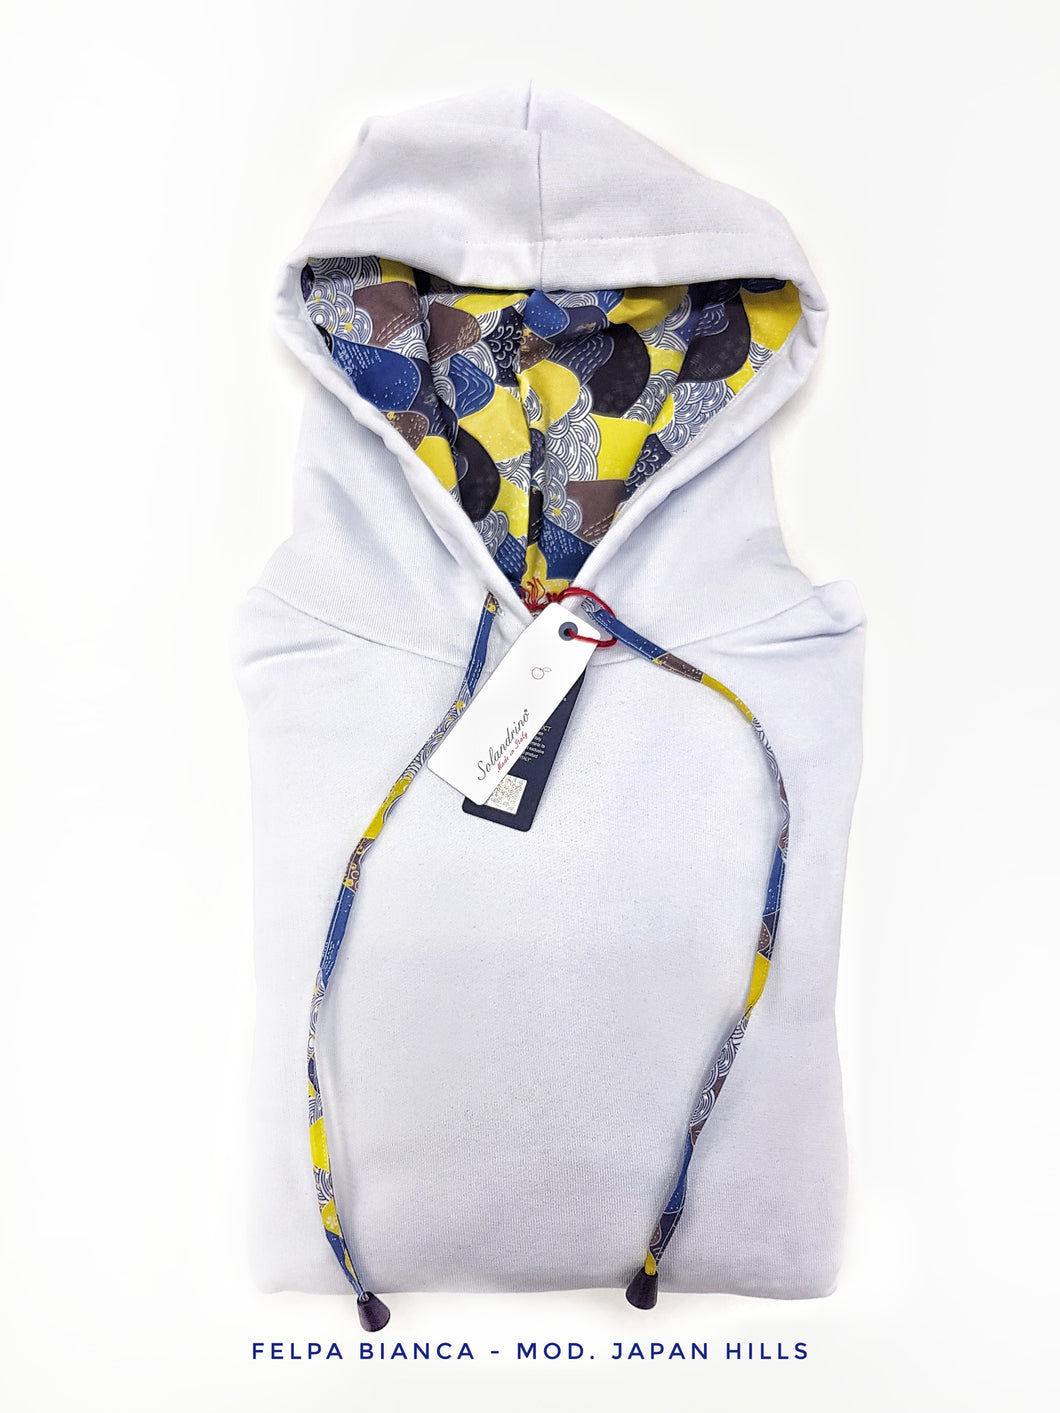 Felpa Bianca con Cappuccio Design Japan hills made in Italy Fantasia  100% cotone - Sweatshirt hoodie